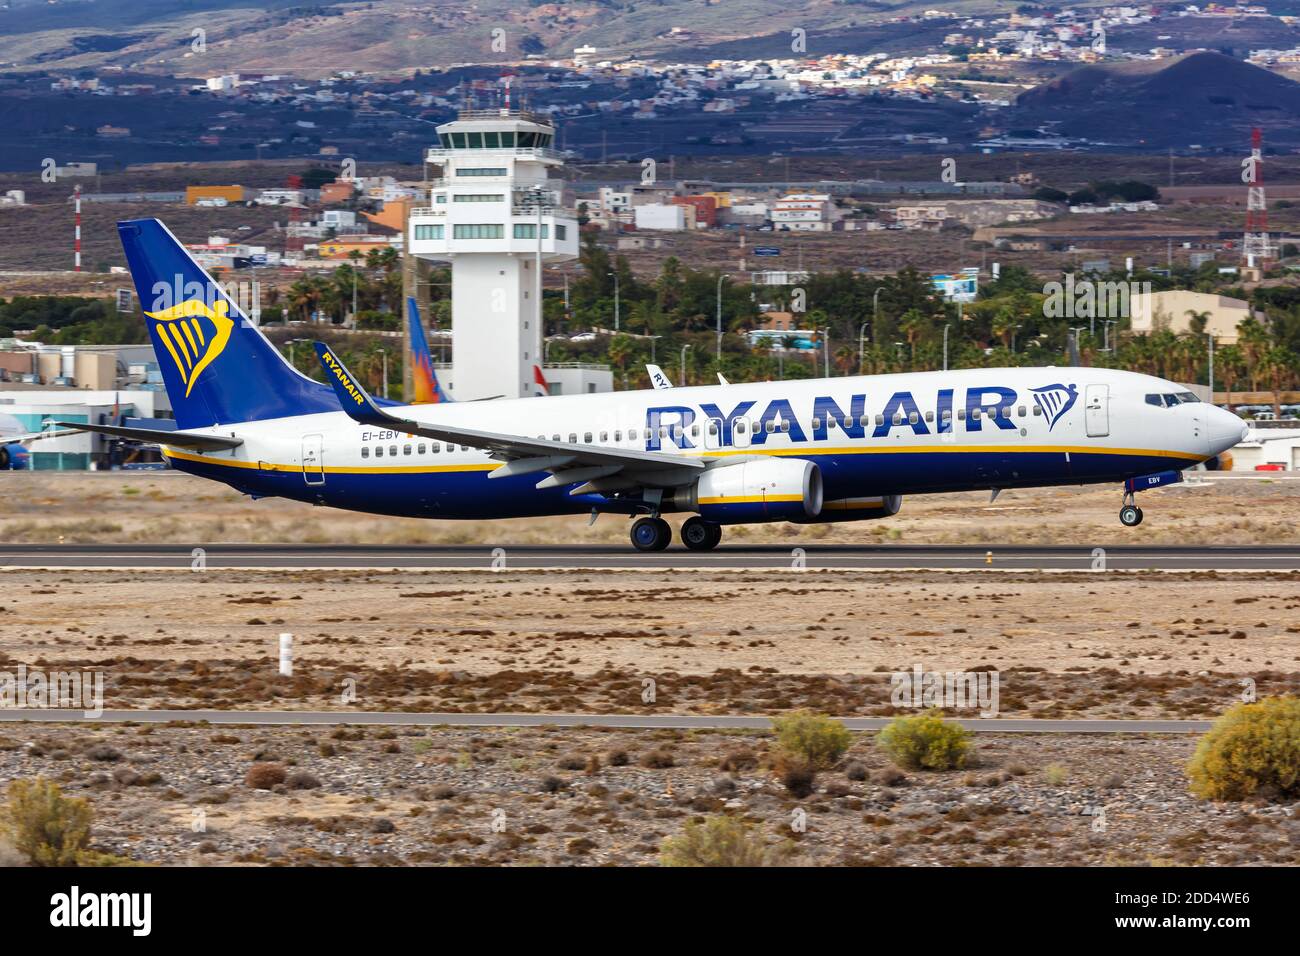 Tenerife, Spagna - 23 novembre 2019: Aereo Ryanair Boeing 737-800 all'aeroporto Tenerife Sud in Spagna. Boeing è un produttore americano di aeromobili h Foto Stock